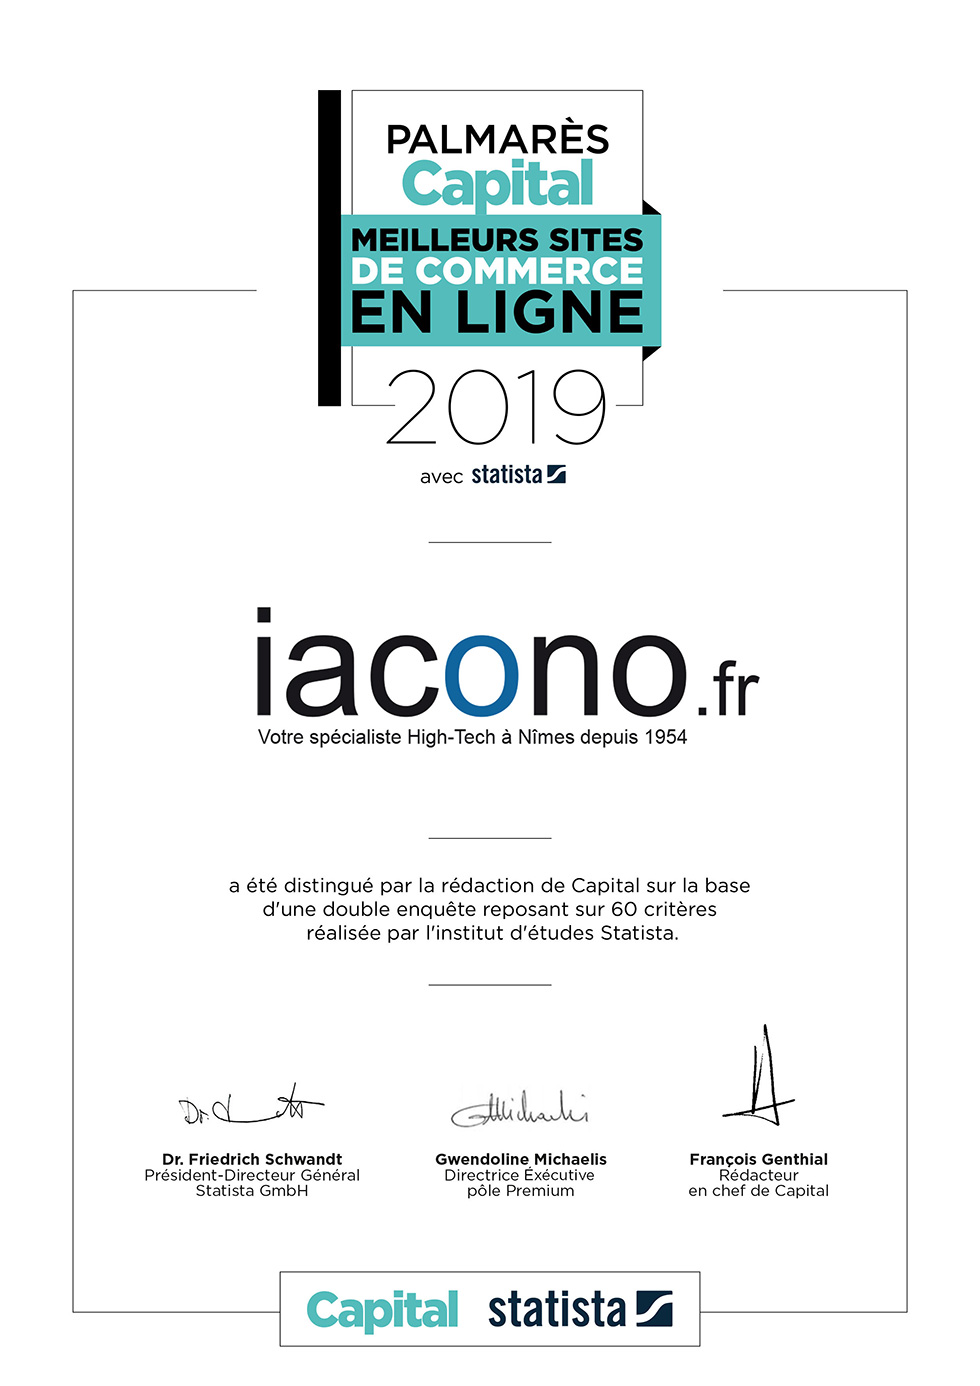 Signature meilleur site de vente en ligne Capital 2019 - iacono.fr